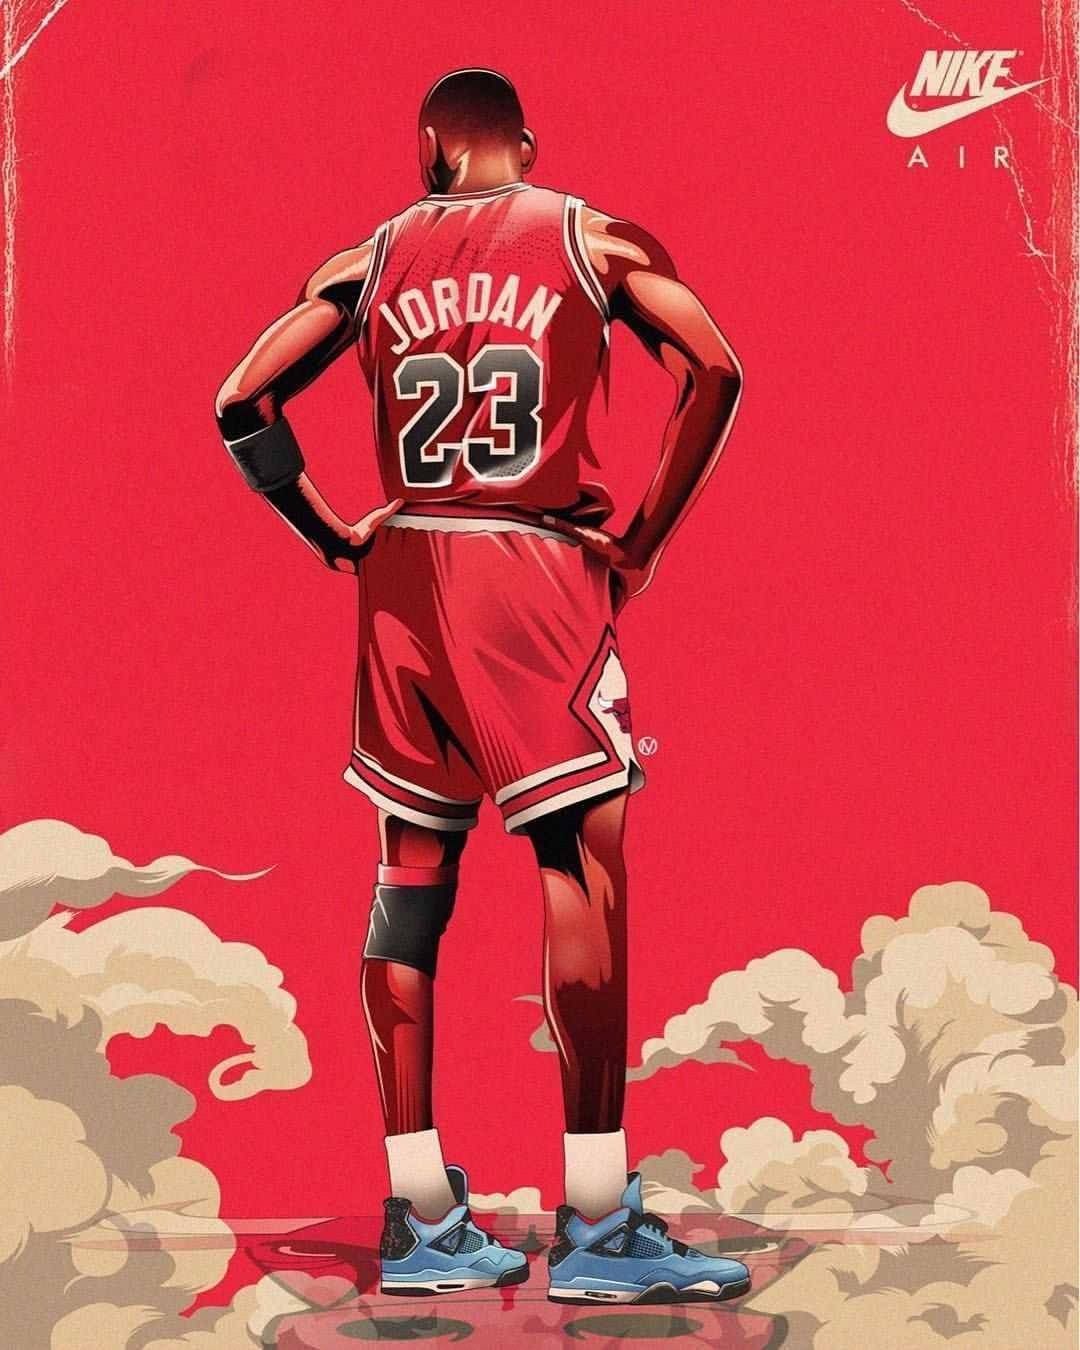 Nike Jordan wallpaper for mobile phone. You can download Nike Jordan wallpaper for your iPhone, Android or any mobile phone. - Michael Jordan